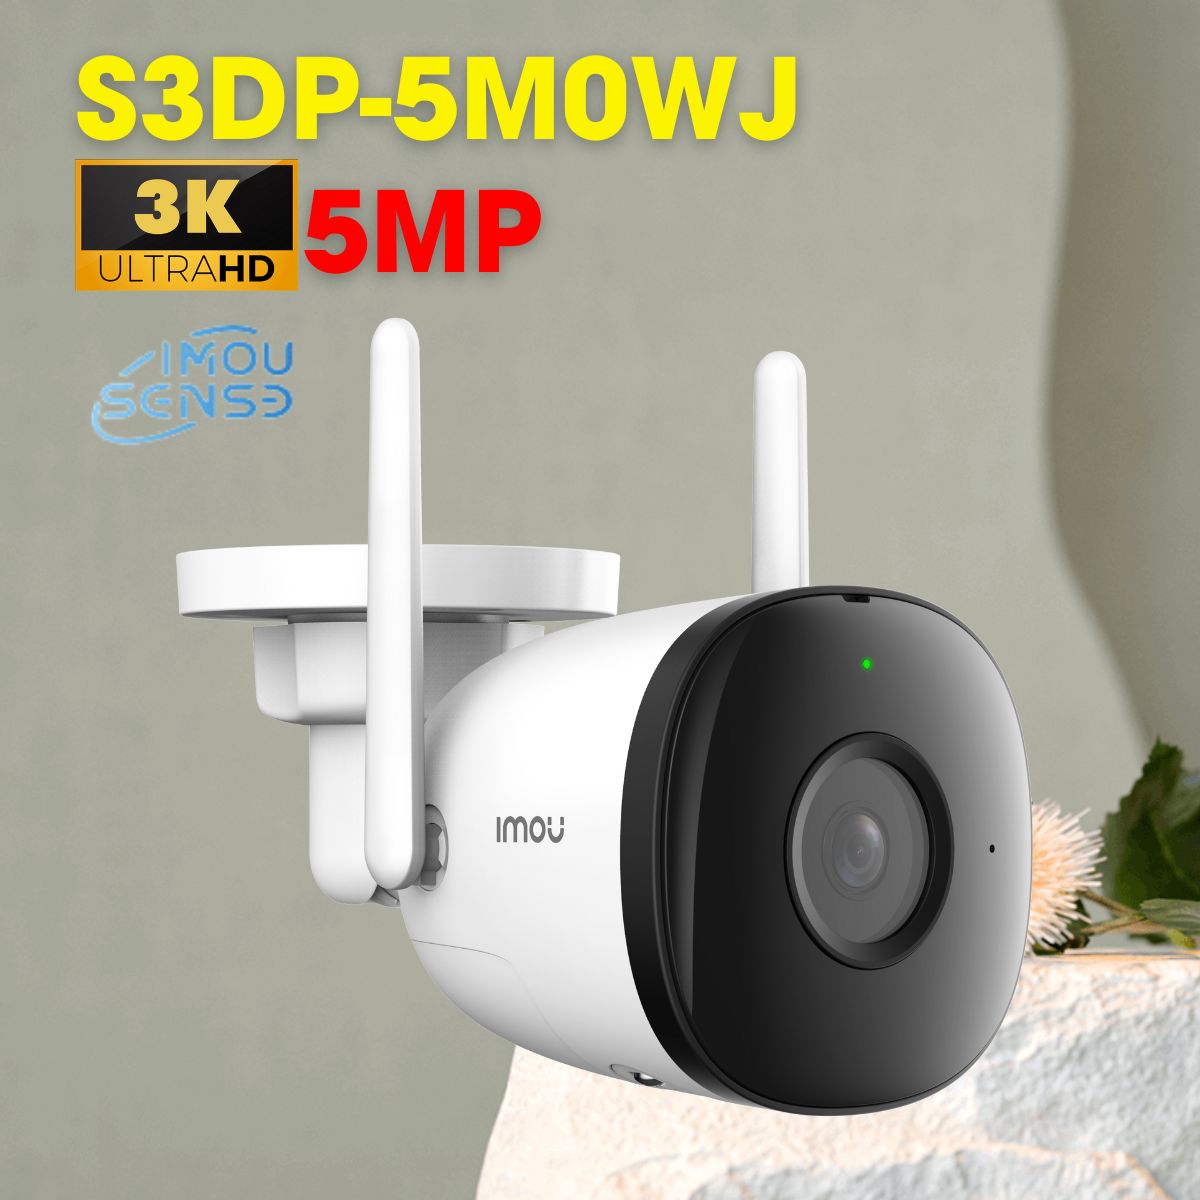 Camera Bullet 3C IP thân 5Mp IMOU IPC-S3DP-5M0WJ hồng ngoại 30m, cảnh báo chủ động, tích hợp mic và loa